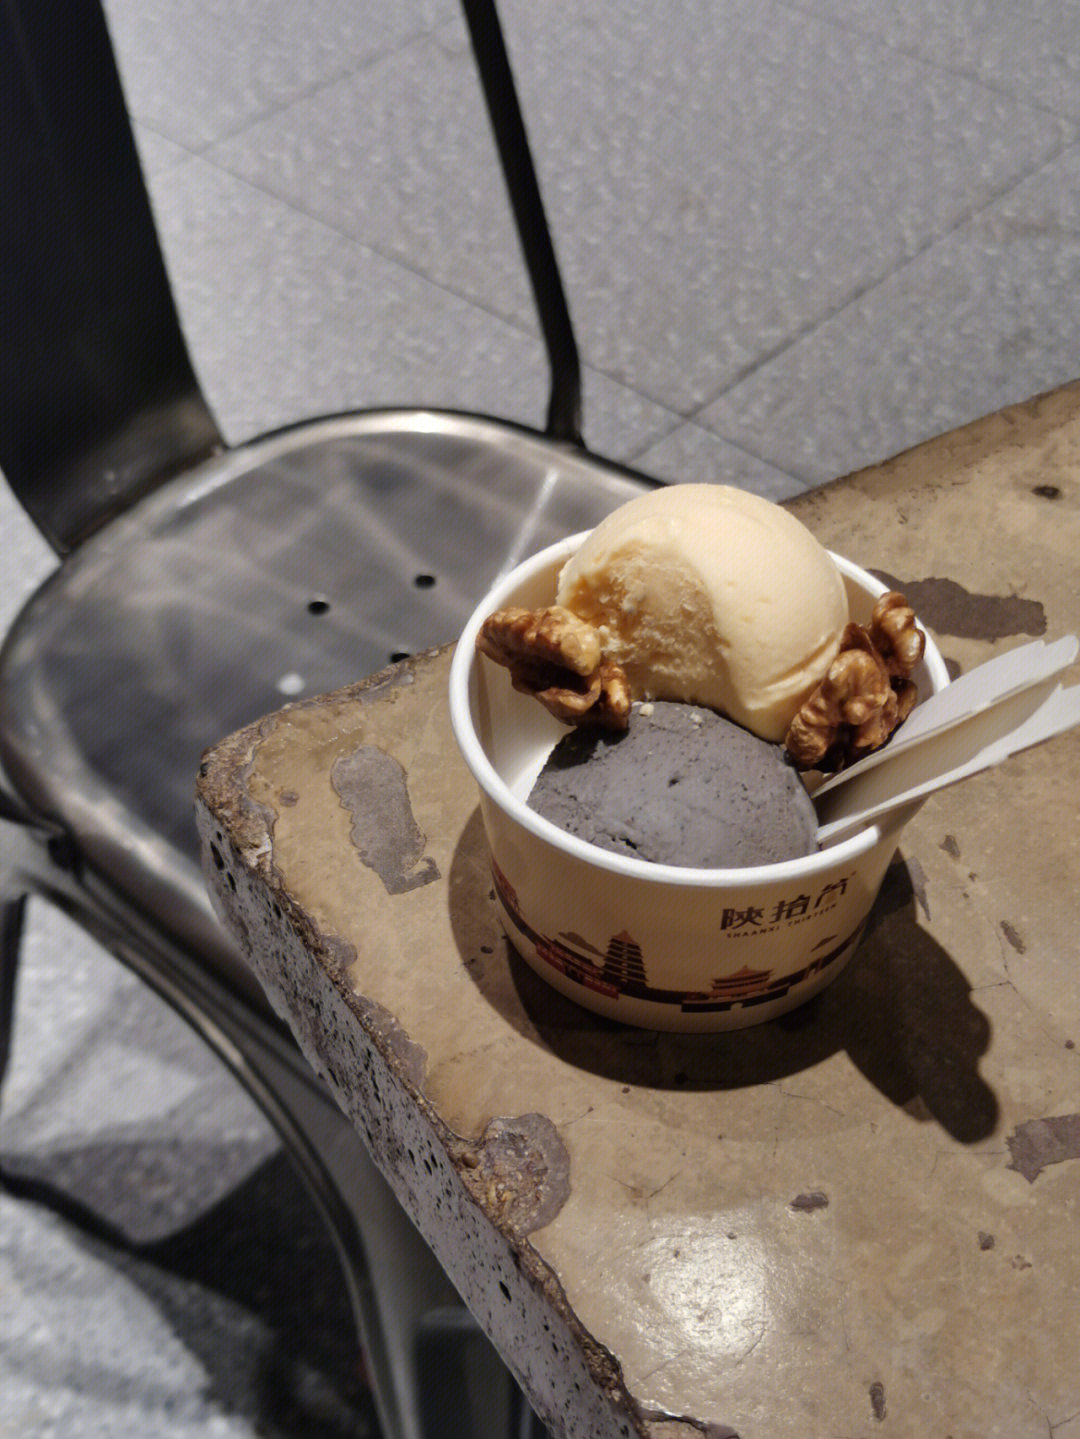 陕拾叁冰淇淋图片